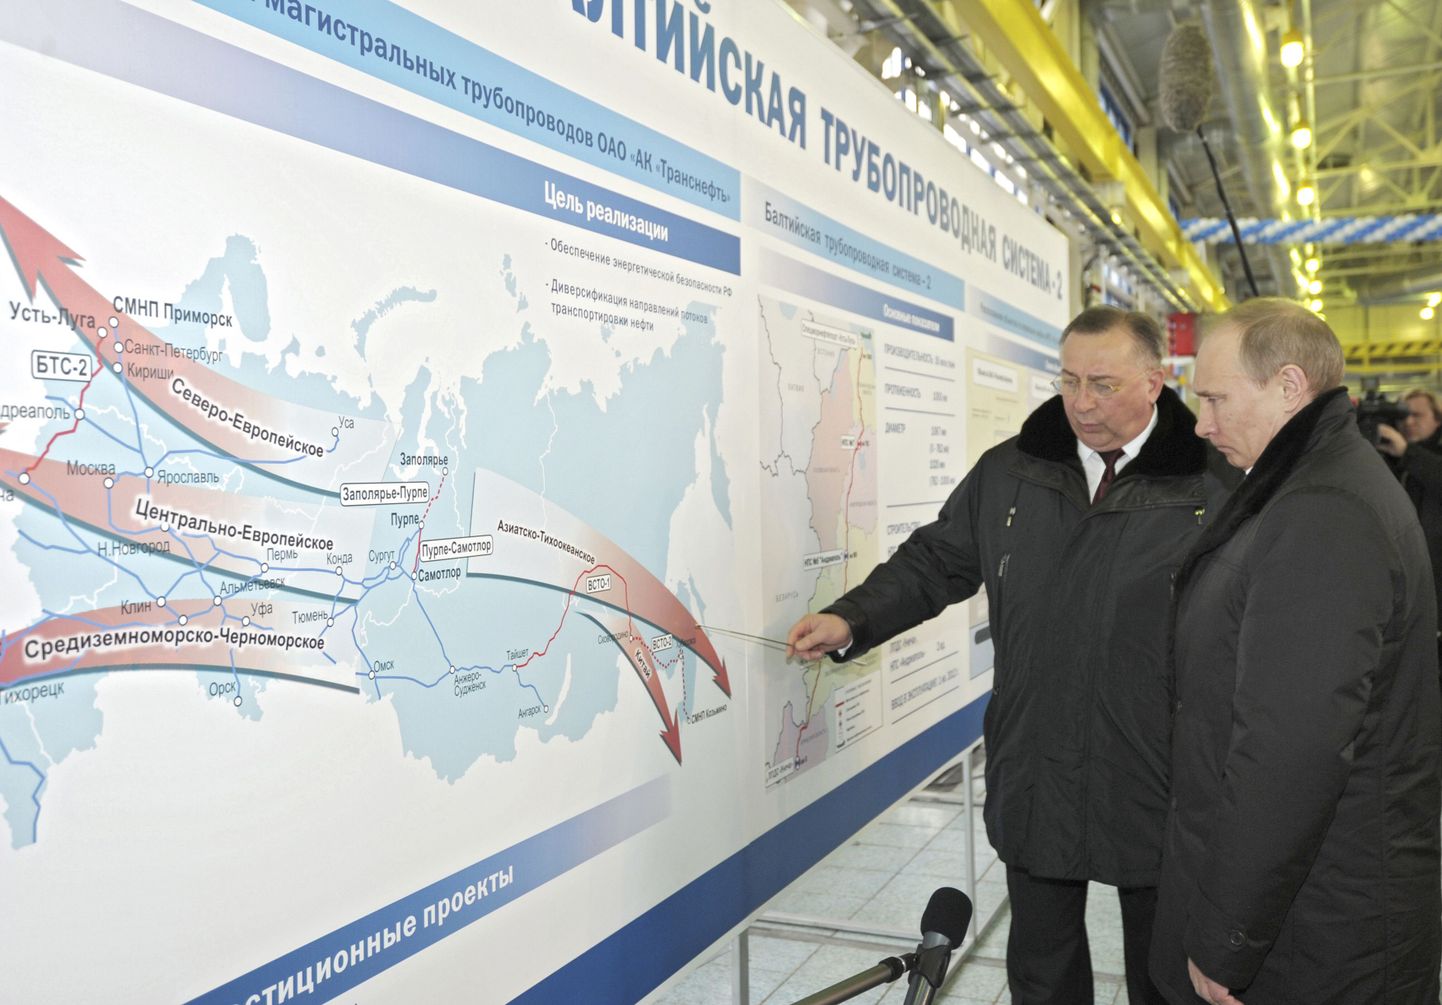 Venemaa peaminister ja tulevane president Vladimir Putin (paremal)ning Transnefti juht Nikolai Tokarev 23. märtsil Ust-Luga sadamas naftaterminali külastamas.